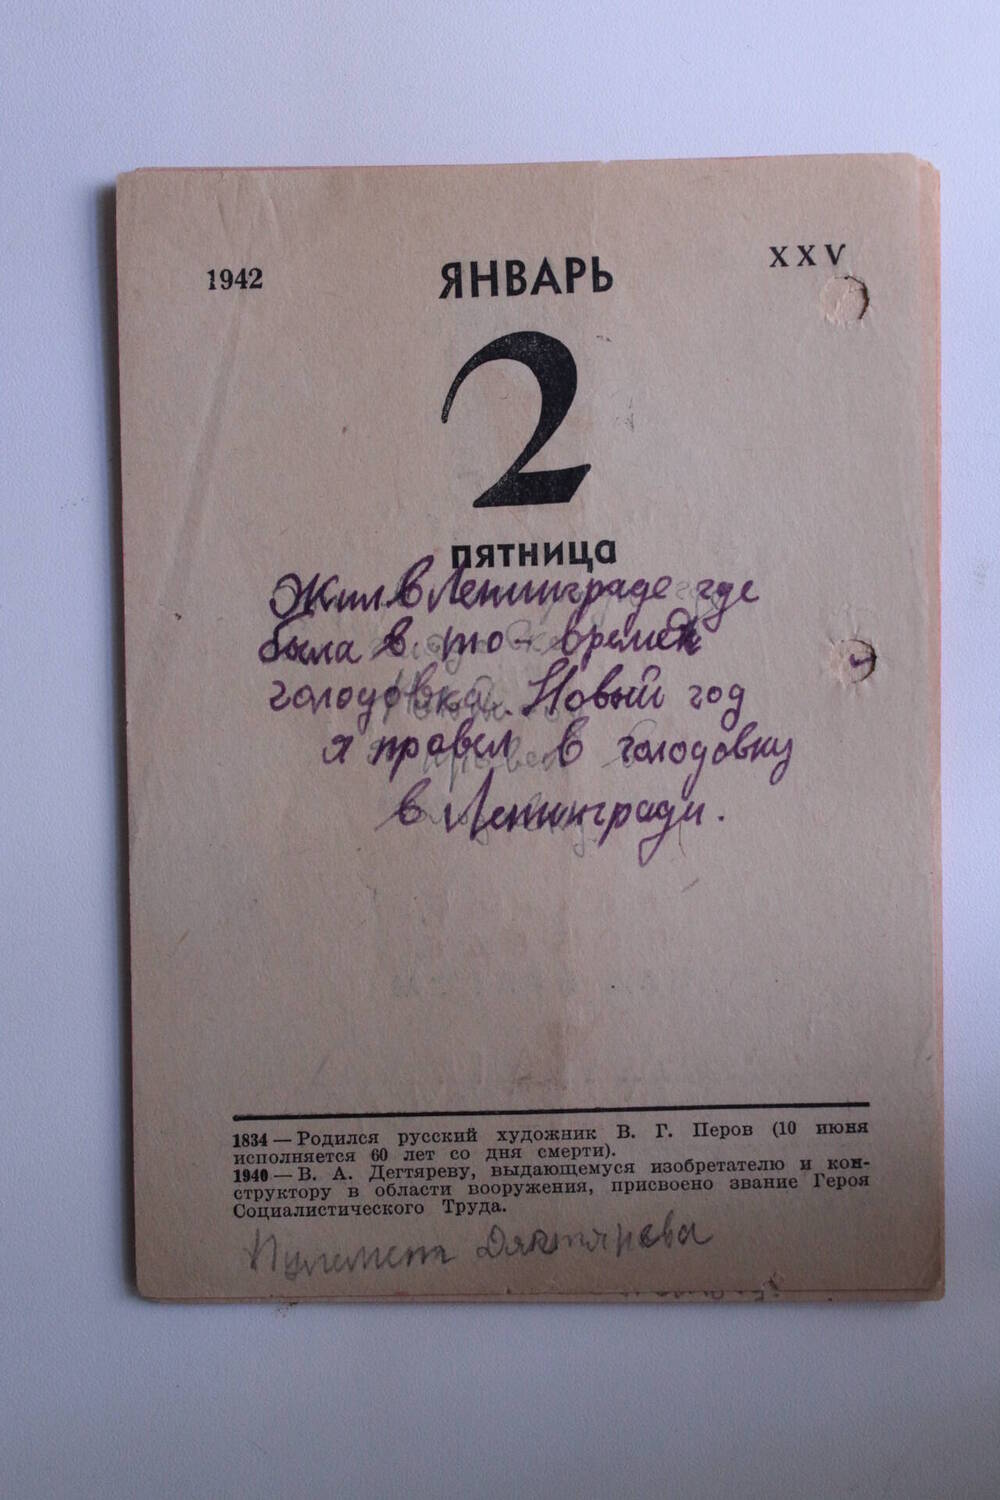 Календарь на котором Николай Васильев писал дневник в годы блокады.  январь 1942 г.